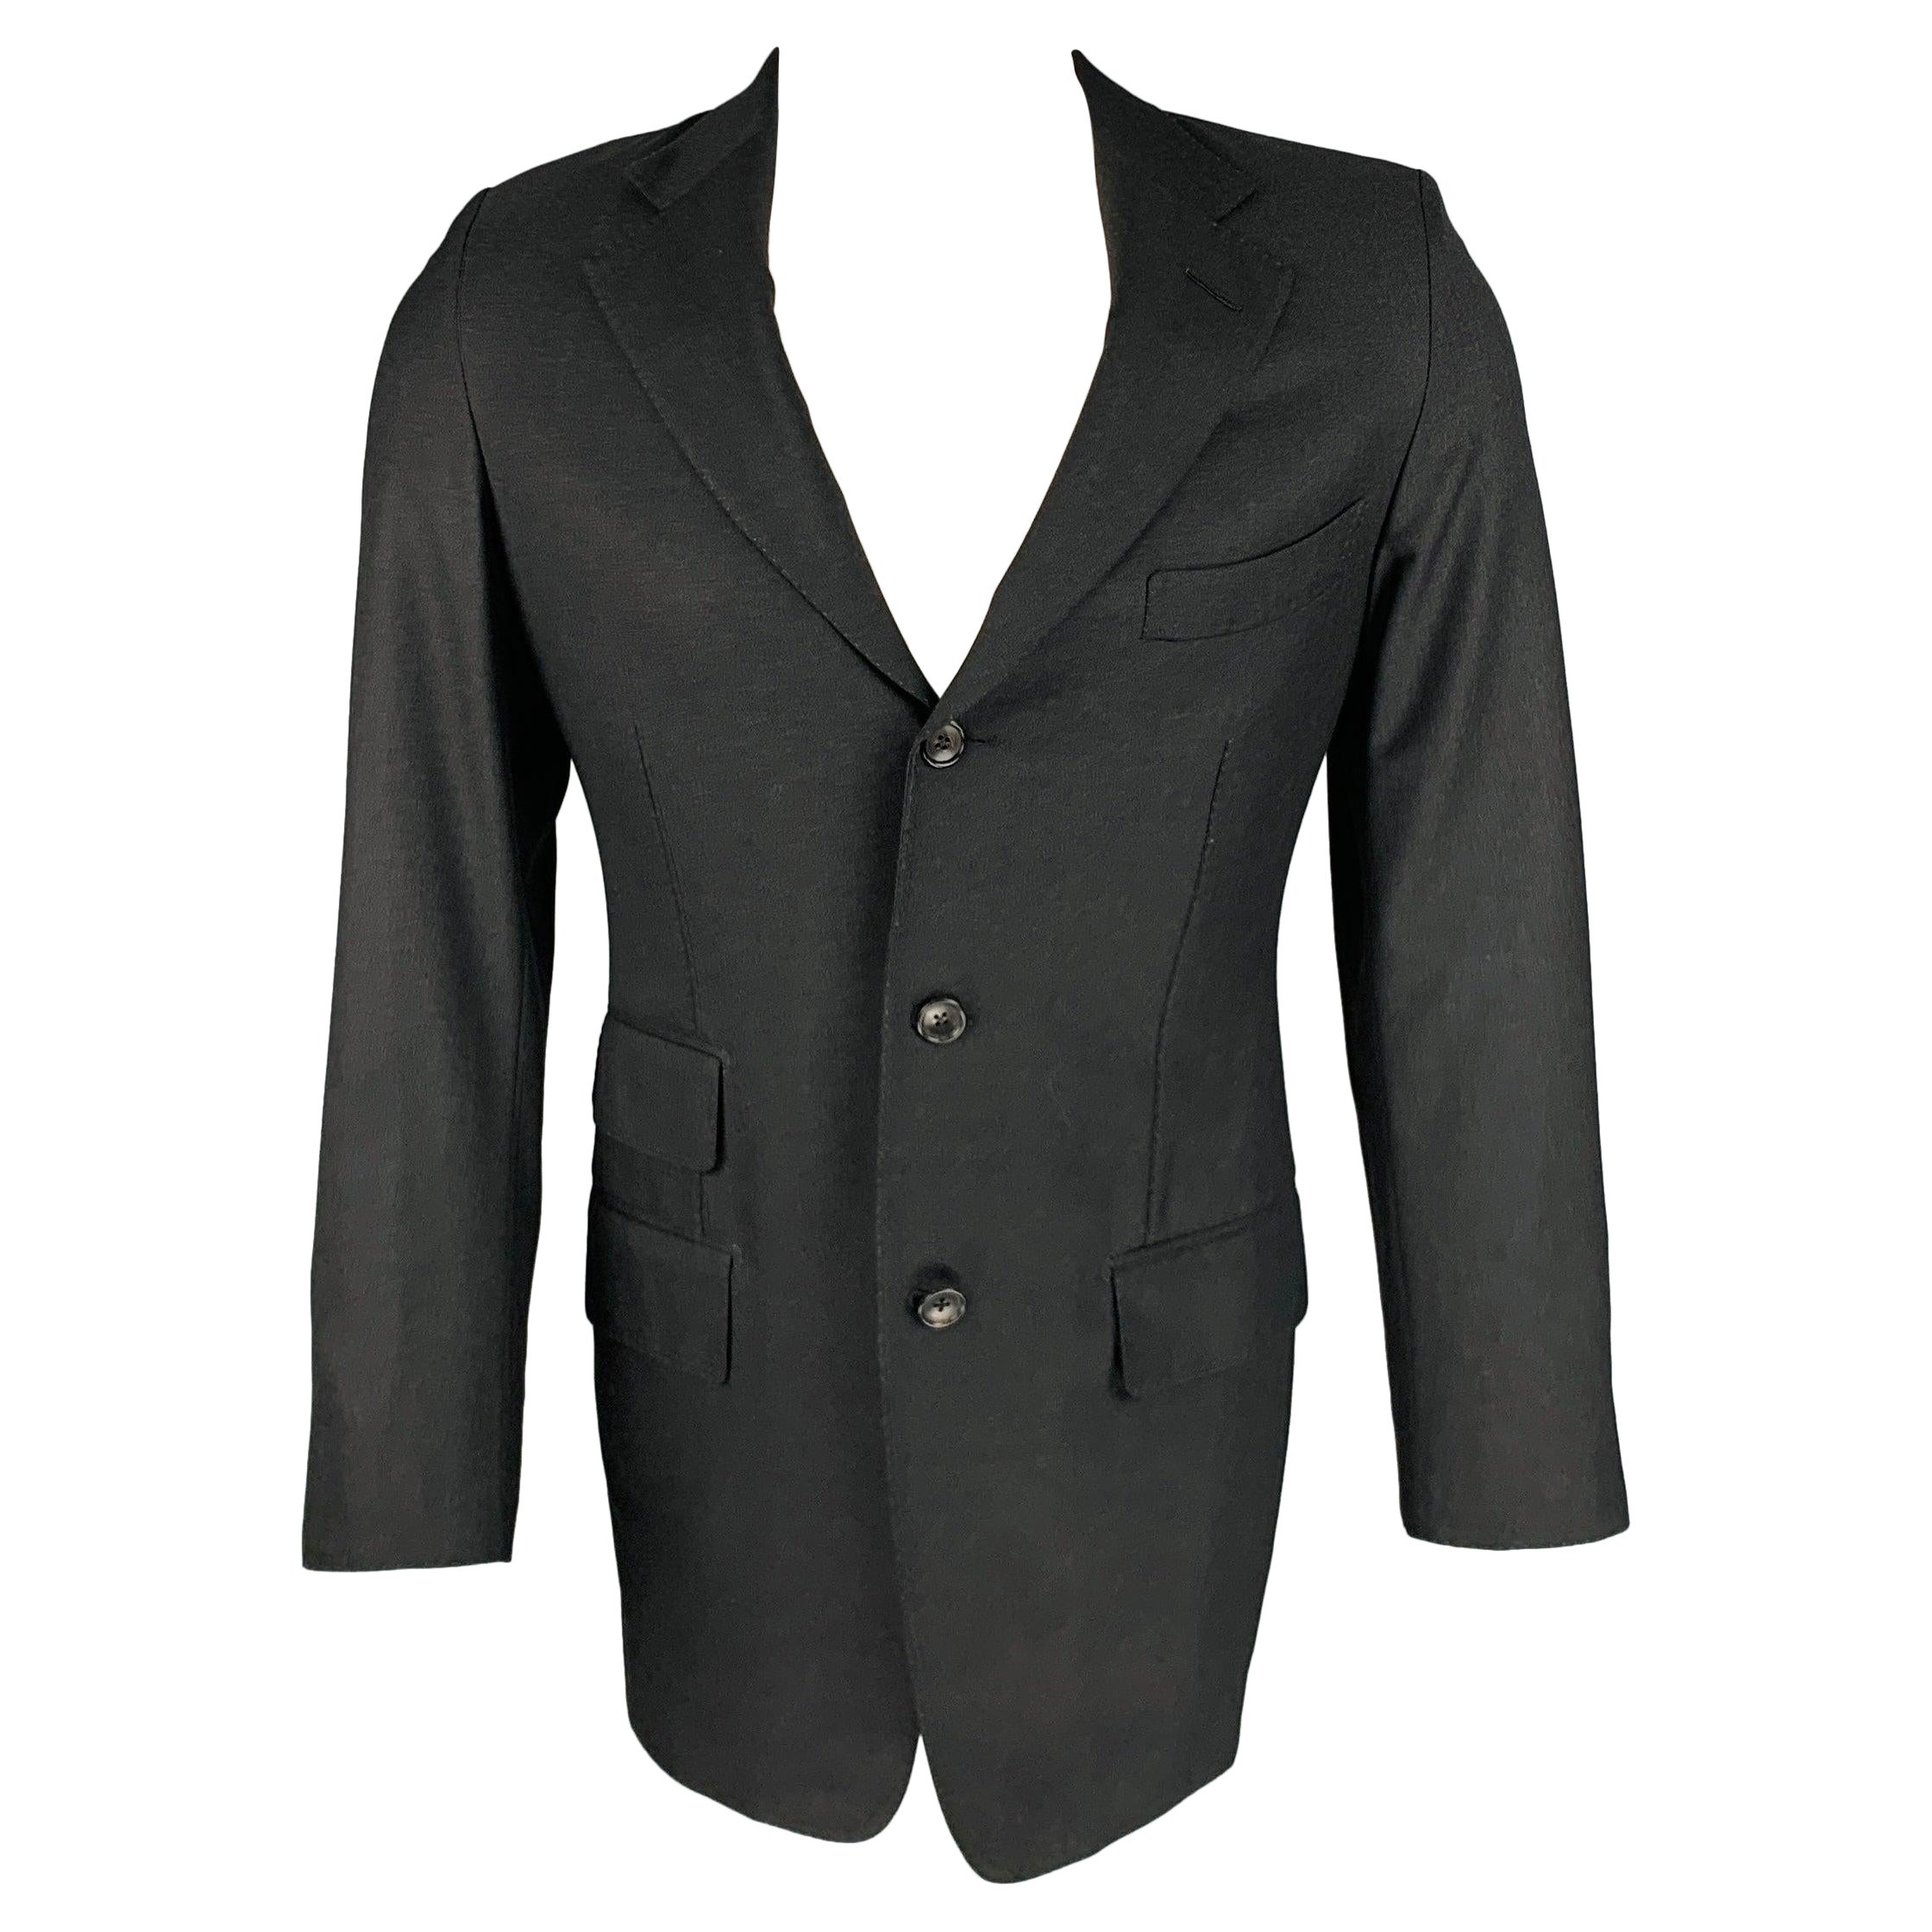 Manteau de sport TOM FORD Taille 38 en laine grise avec revers à visière en vente